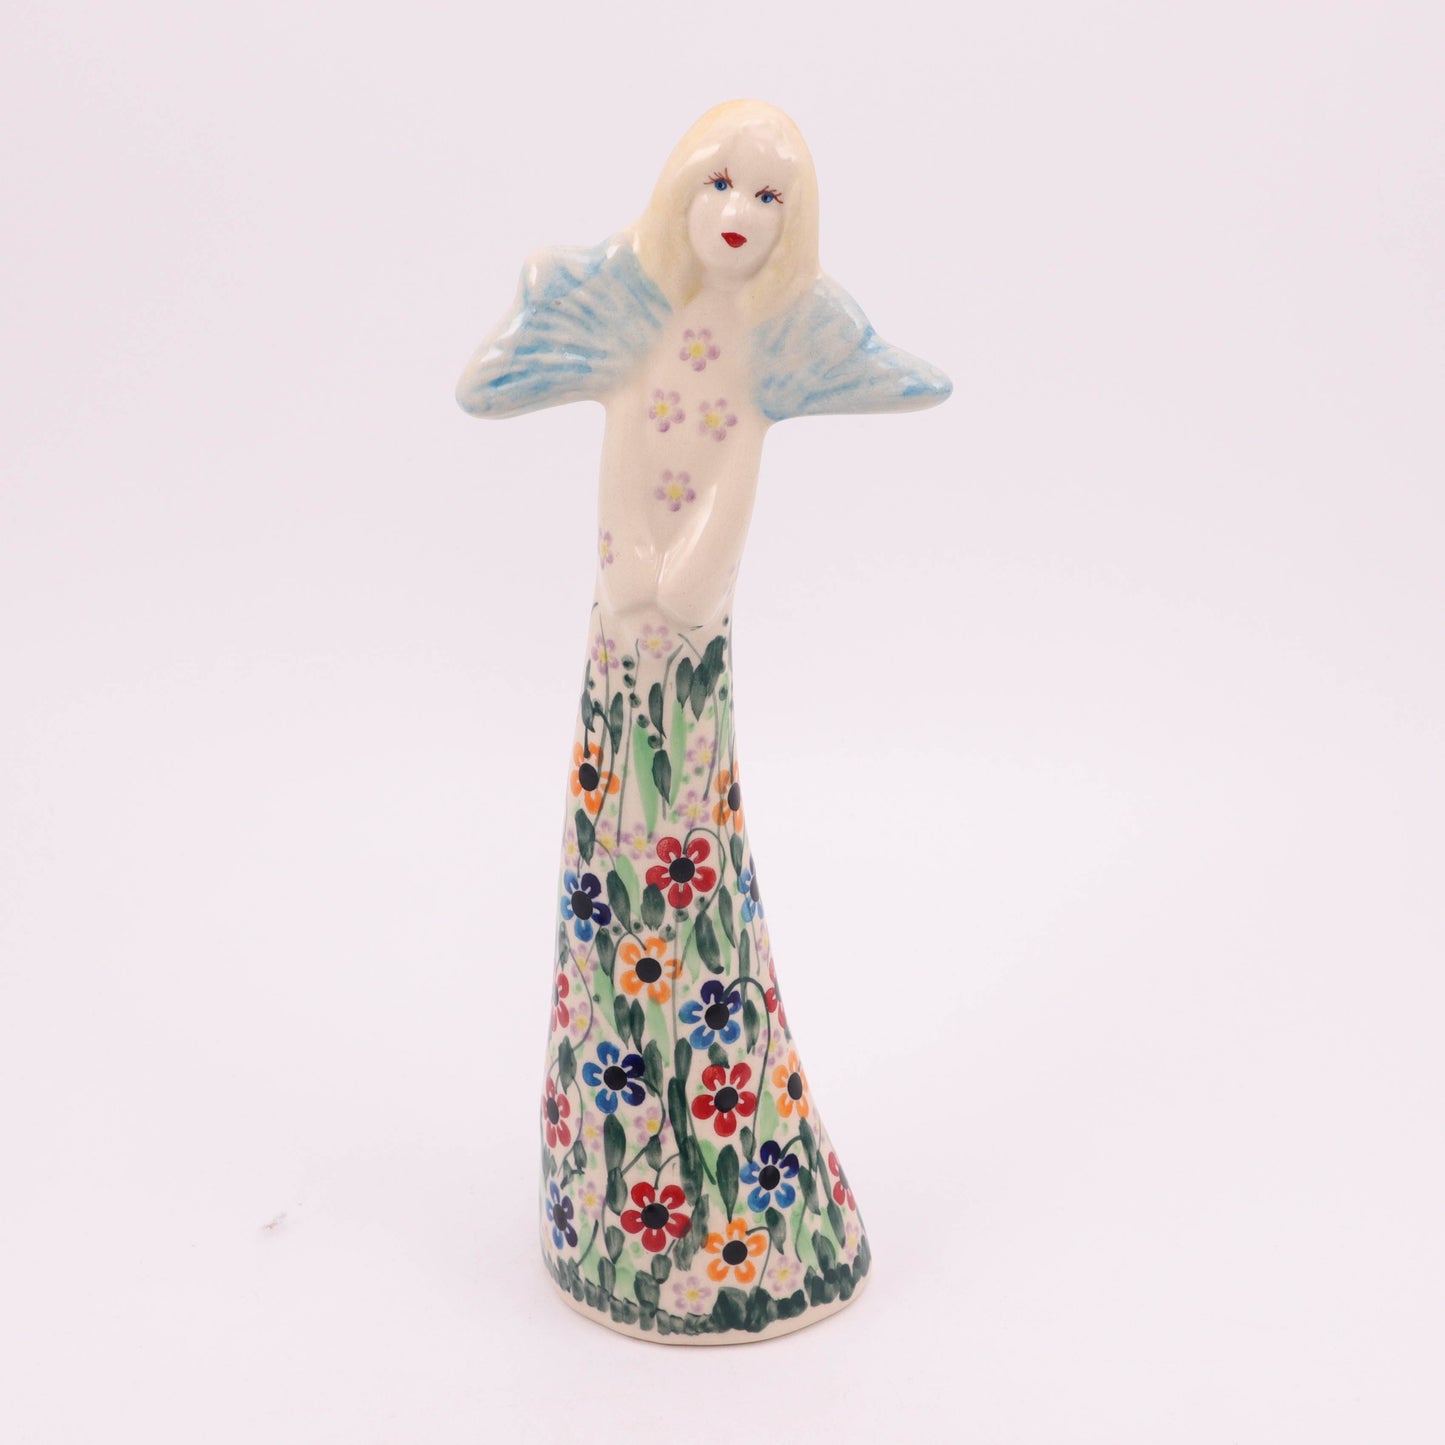 10" Angel Figurine. Pattern: Daisy Fields